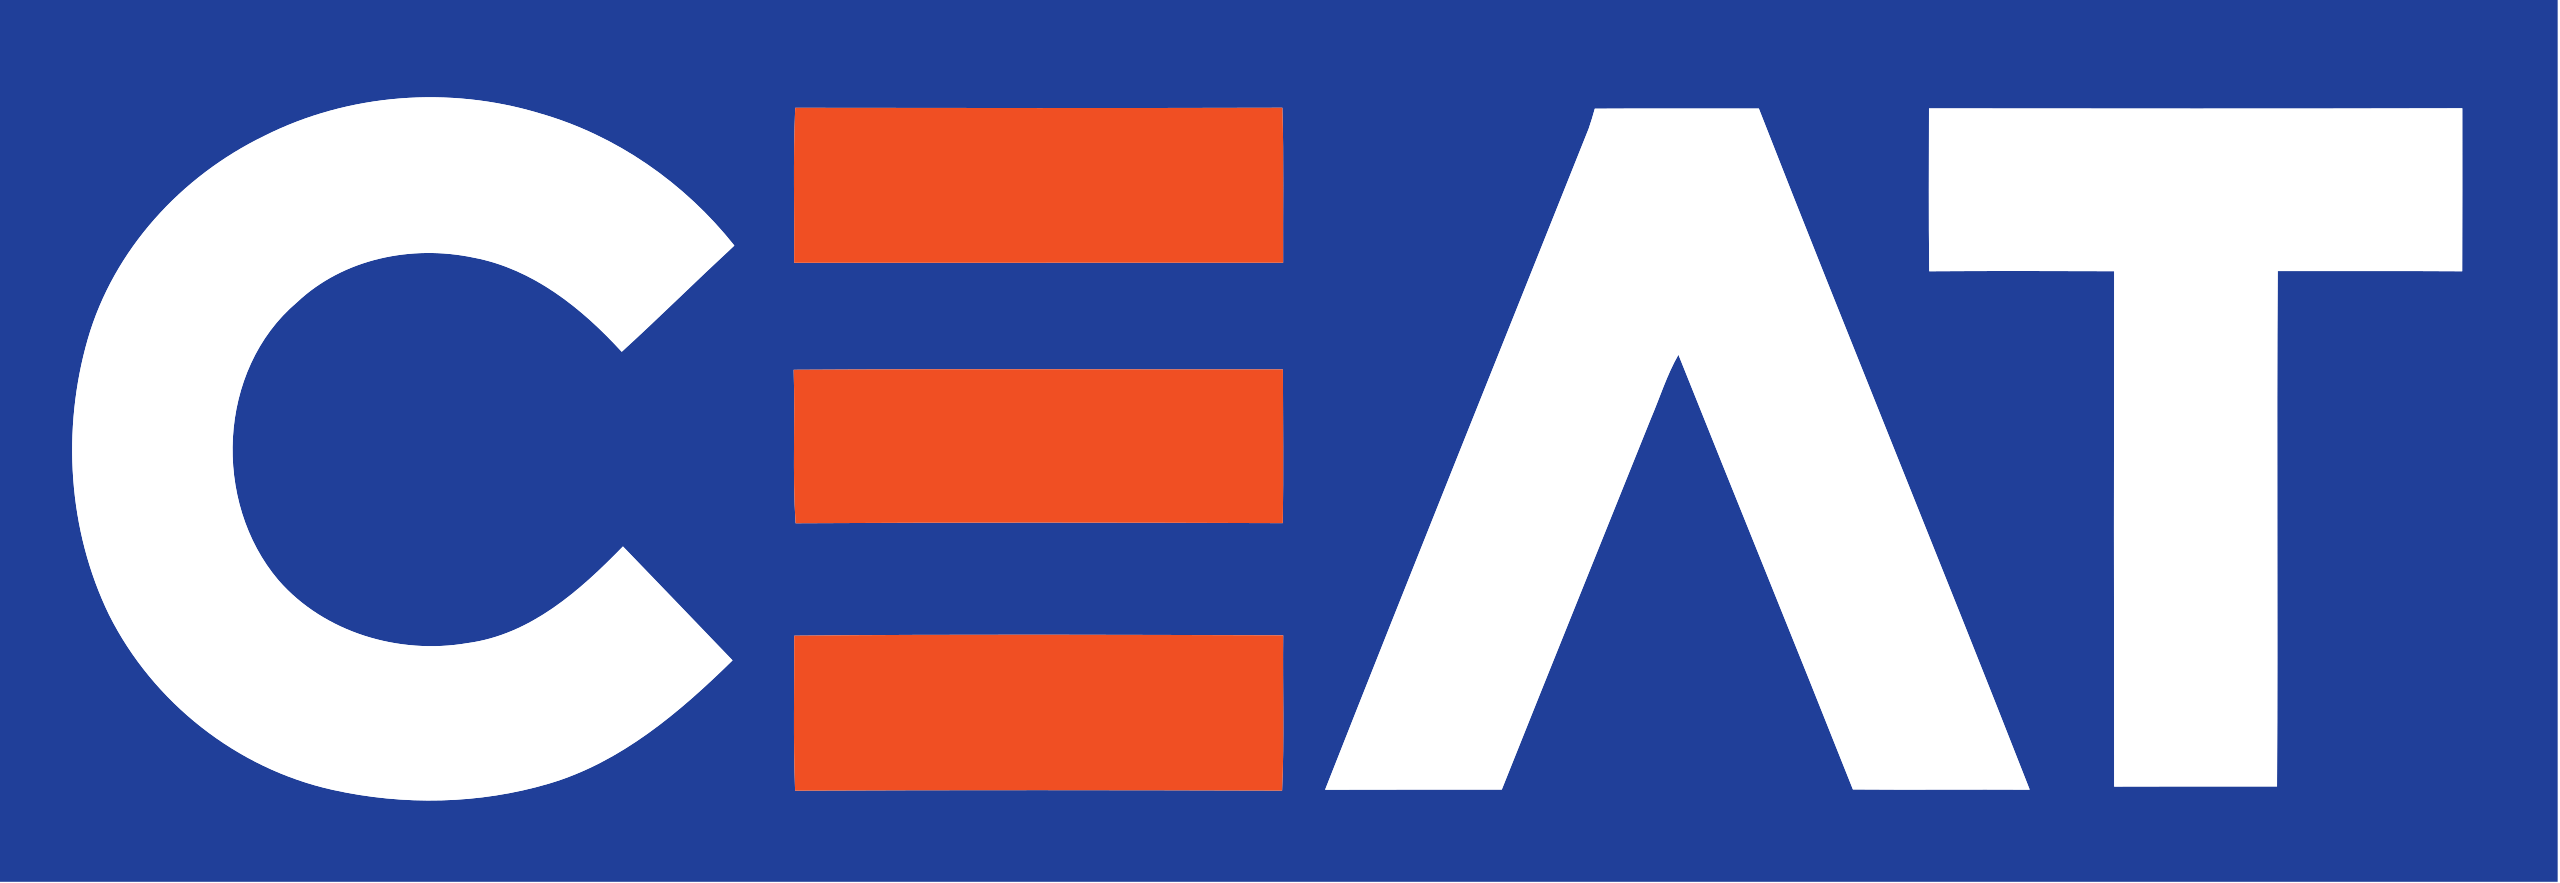 Ceat Brand Logo